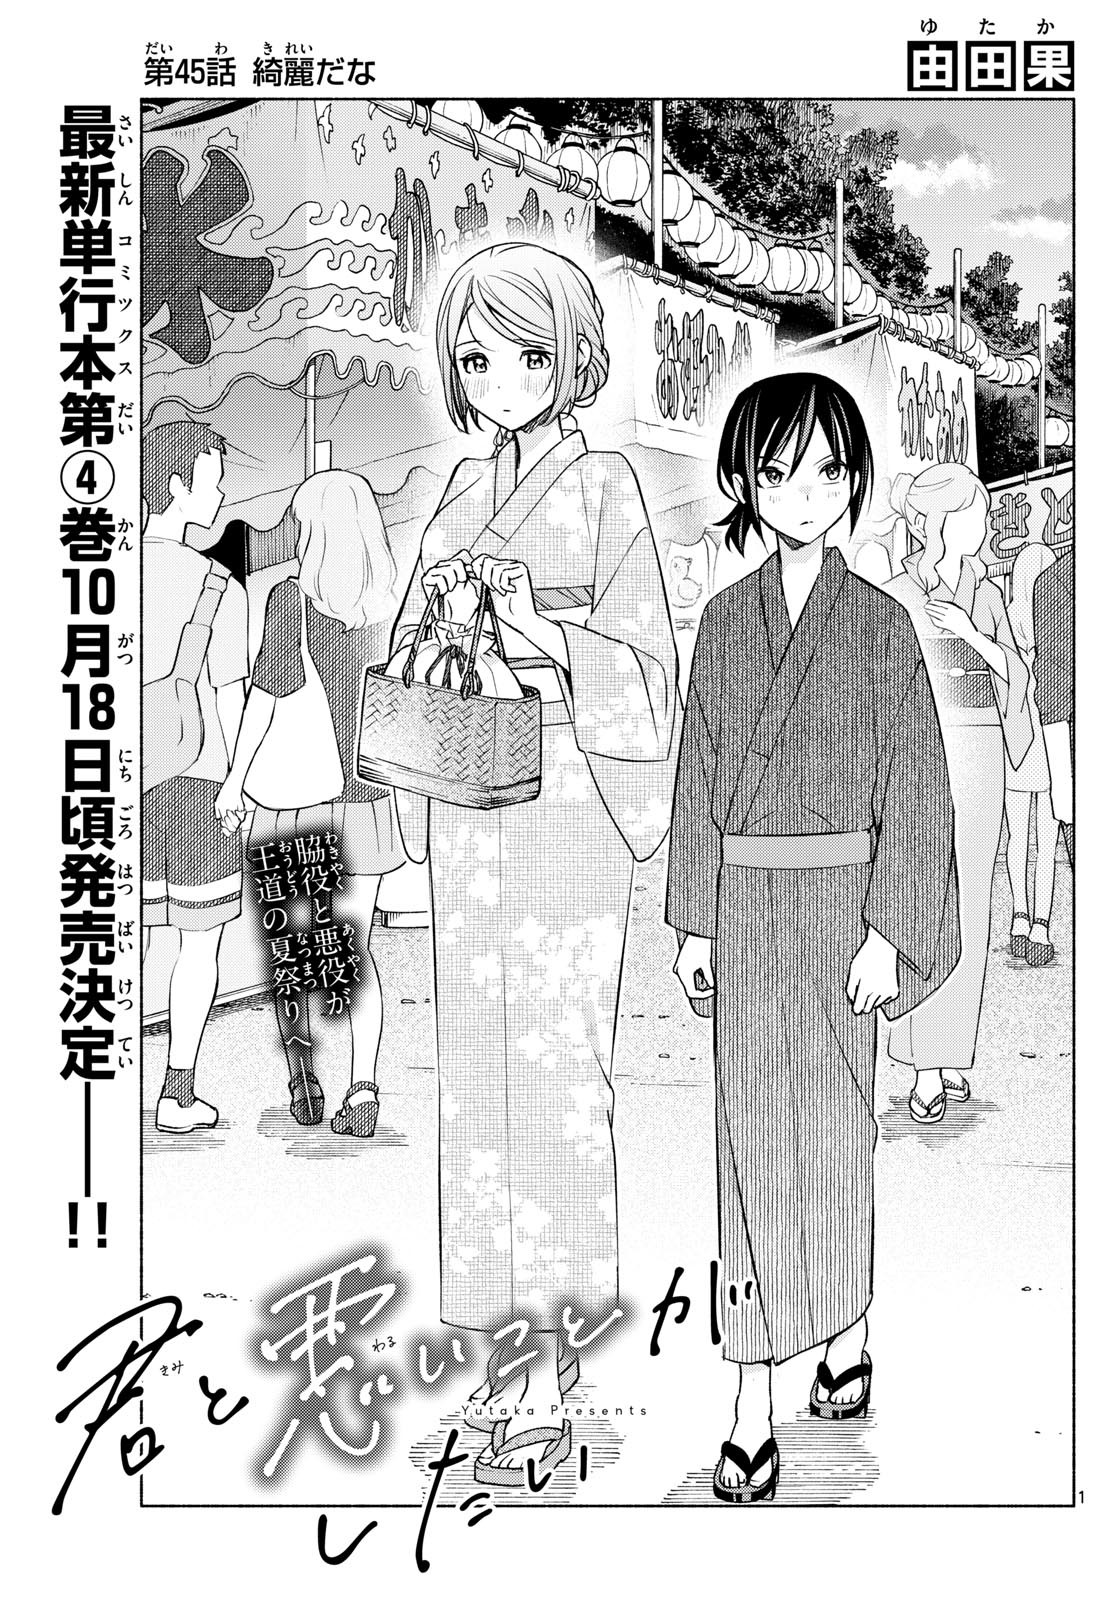 Kimi to Warui Koto ga Shitai - Chapter 045 - Page 1